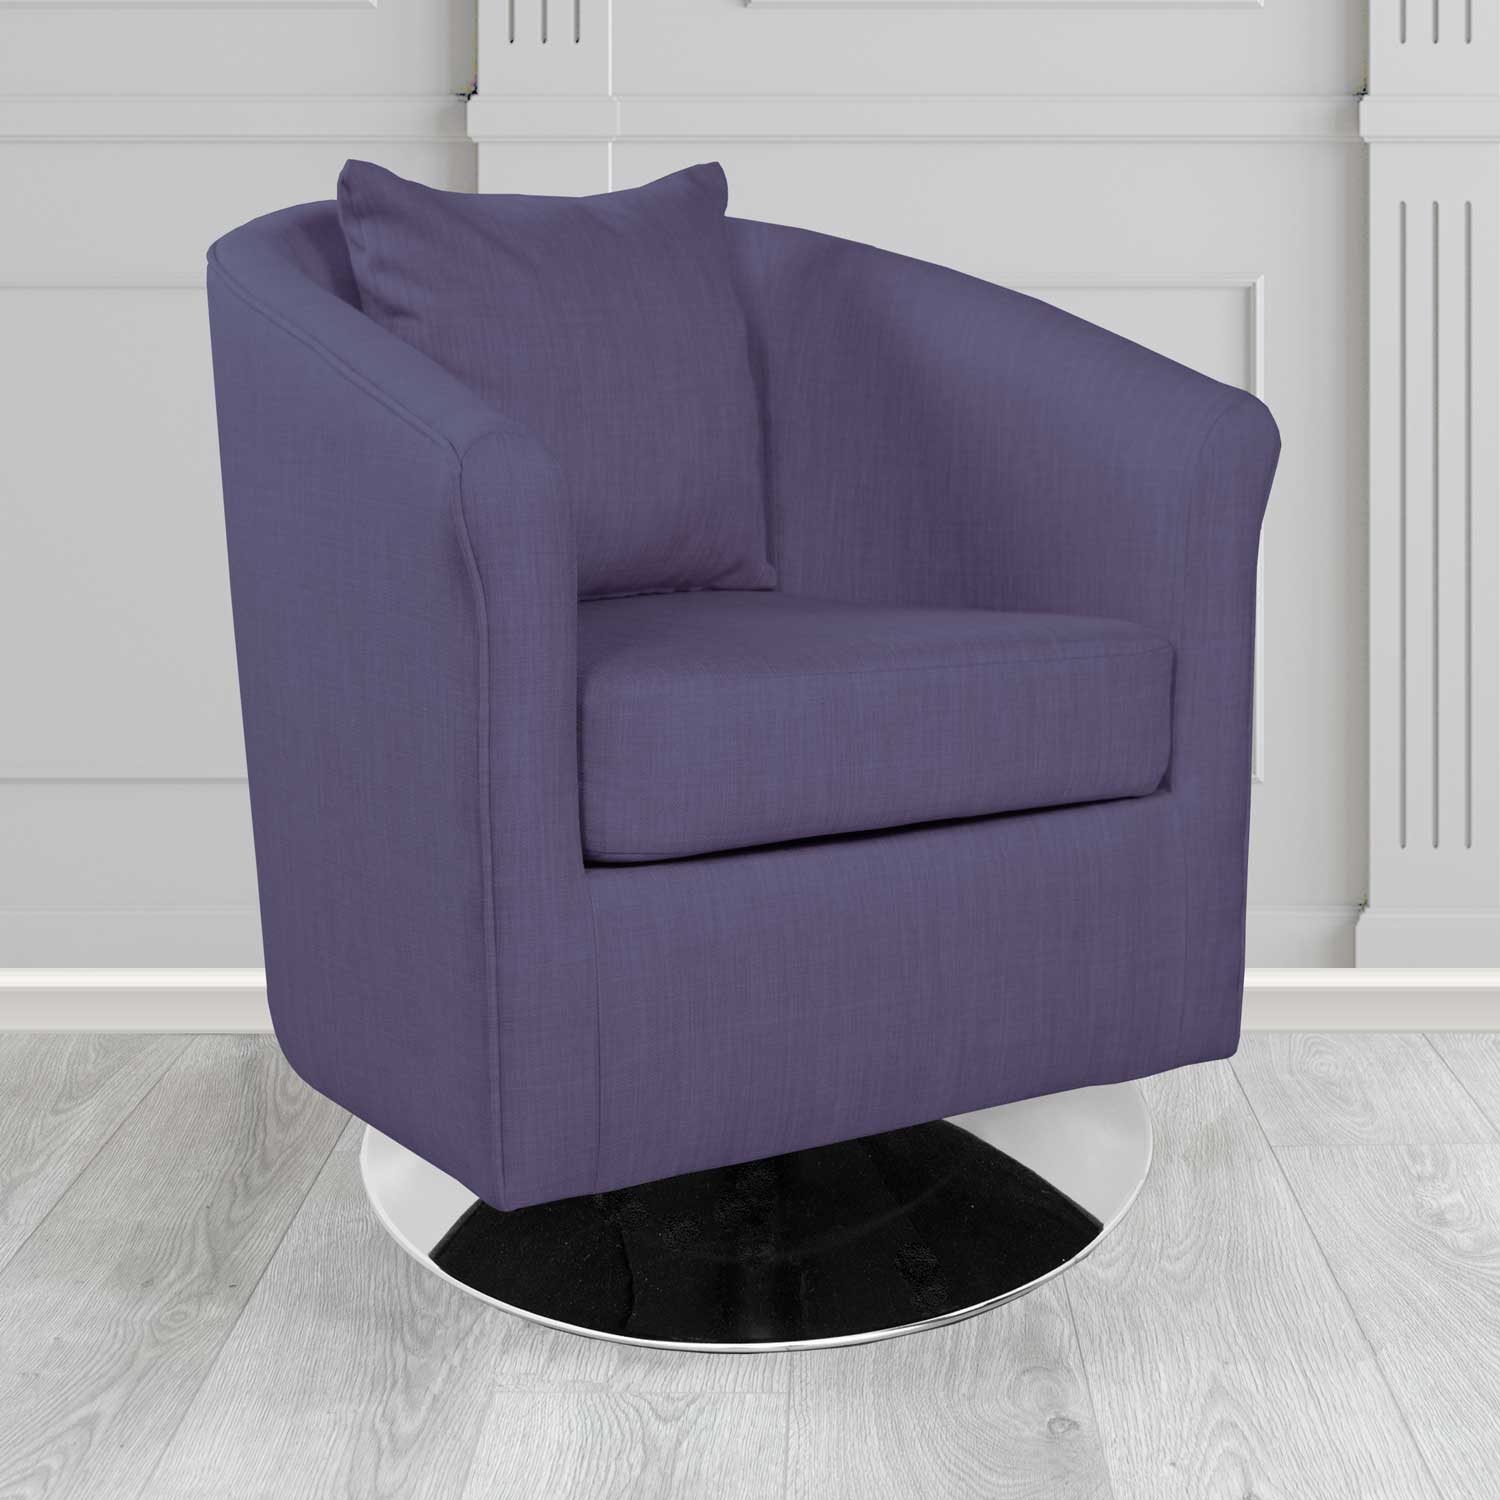 St Tropez Charles Purple Plain Linen Fabric Swivel Tub Chair - The Tub Chair Shop